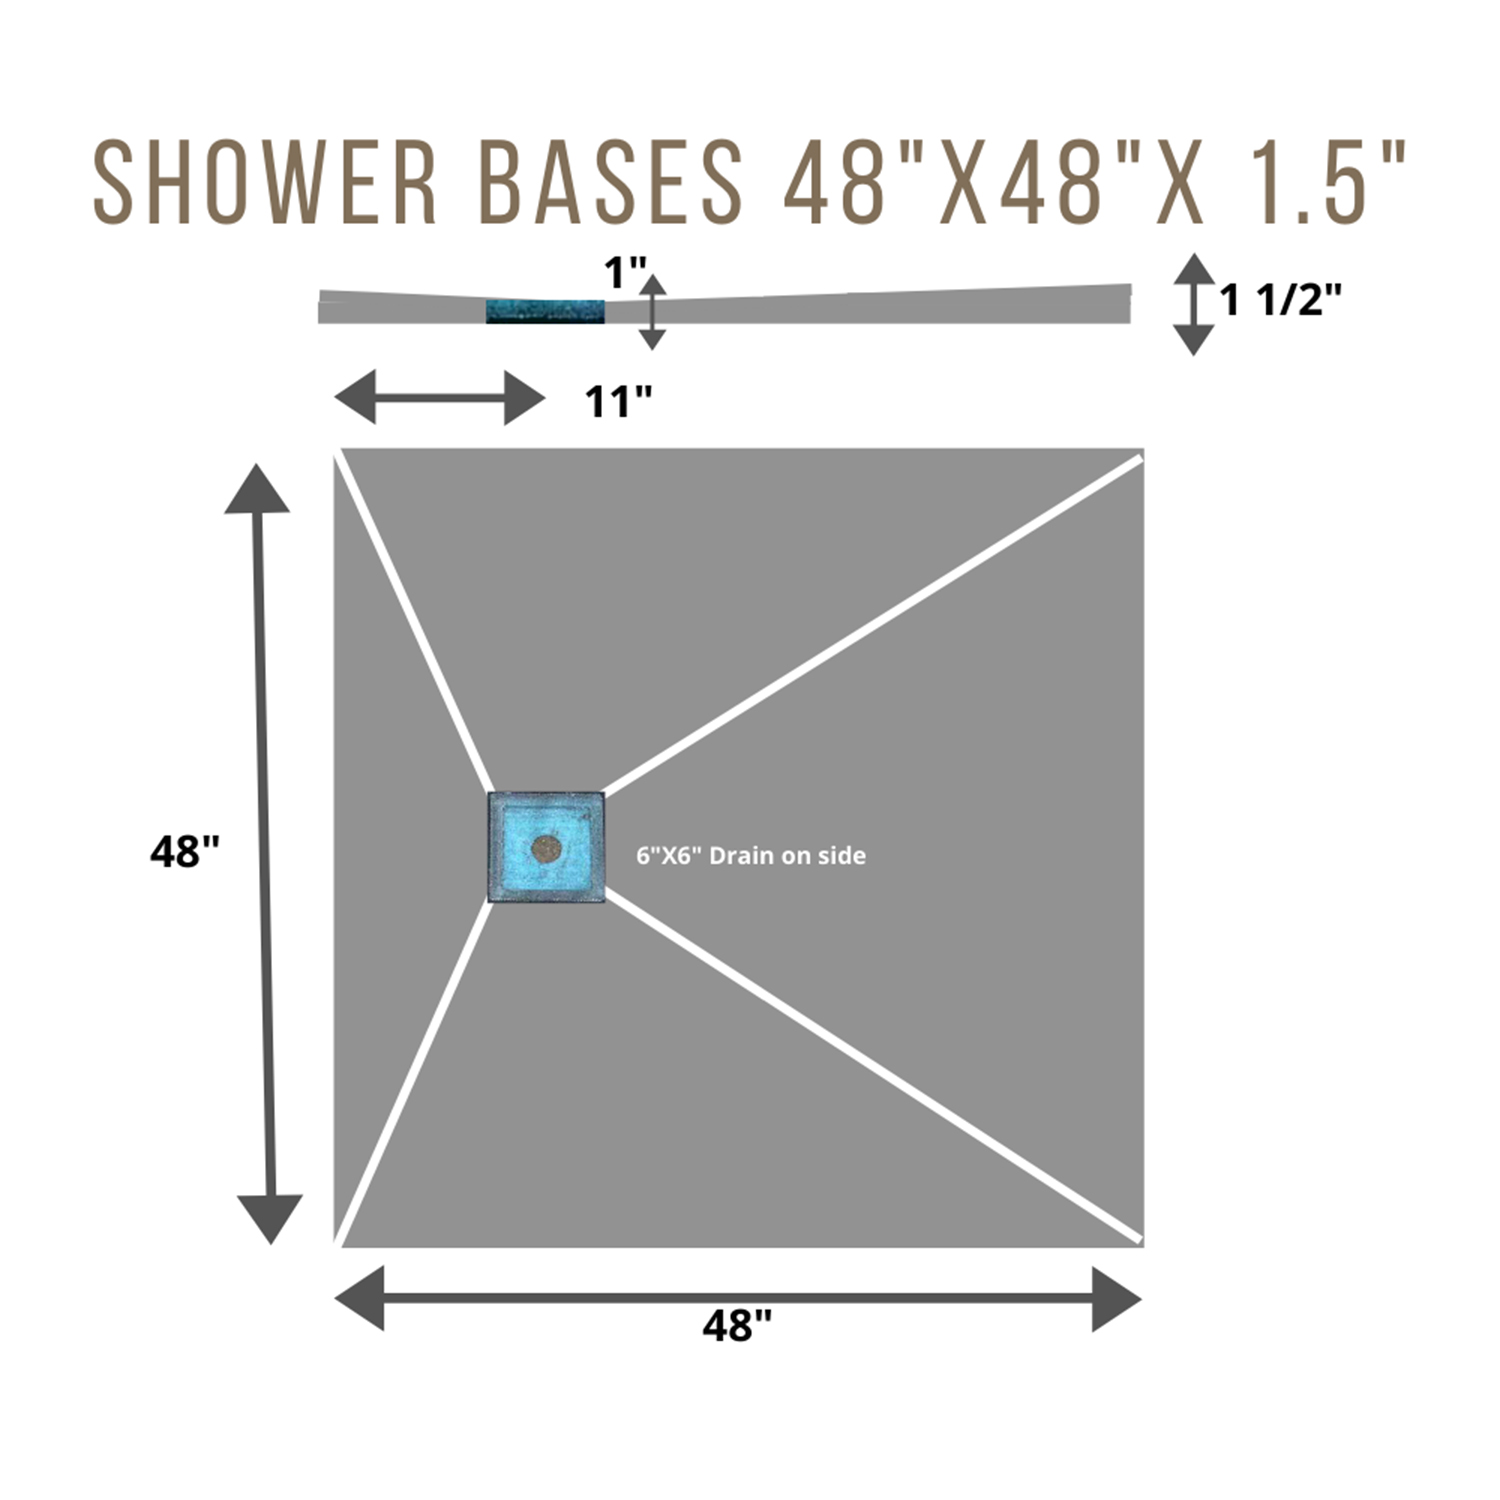 Shower Base 4x4 SIDE 6 x 6